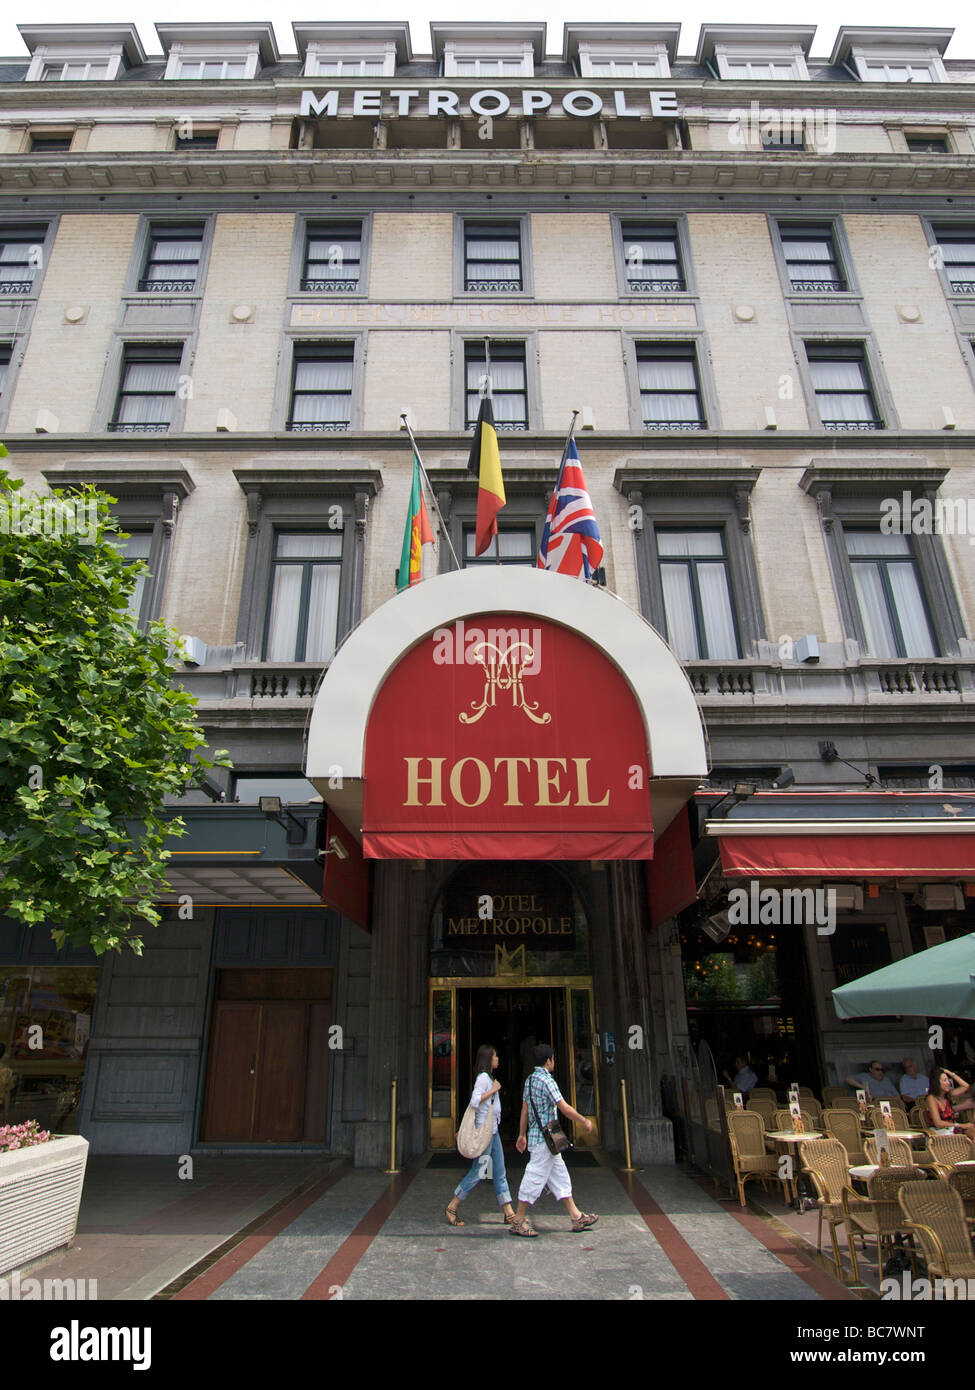 Le Metropole Hotel est un des hôtels les plus prestigieux de Bruxelles et a été depuis 1895 Banque D'Images